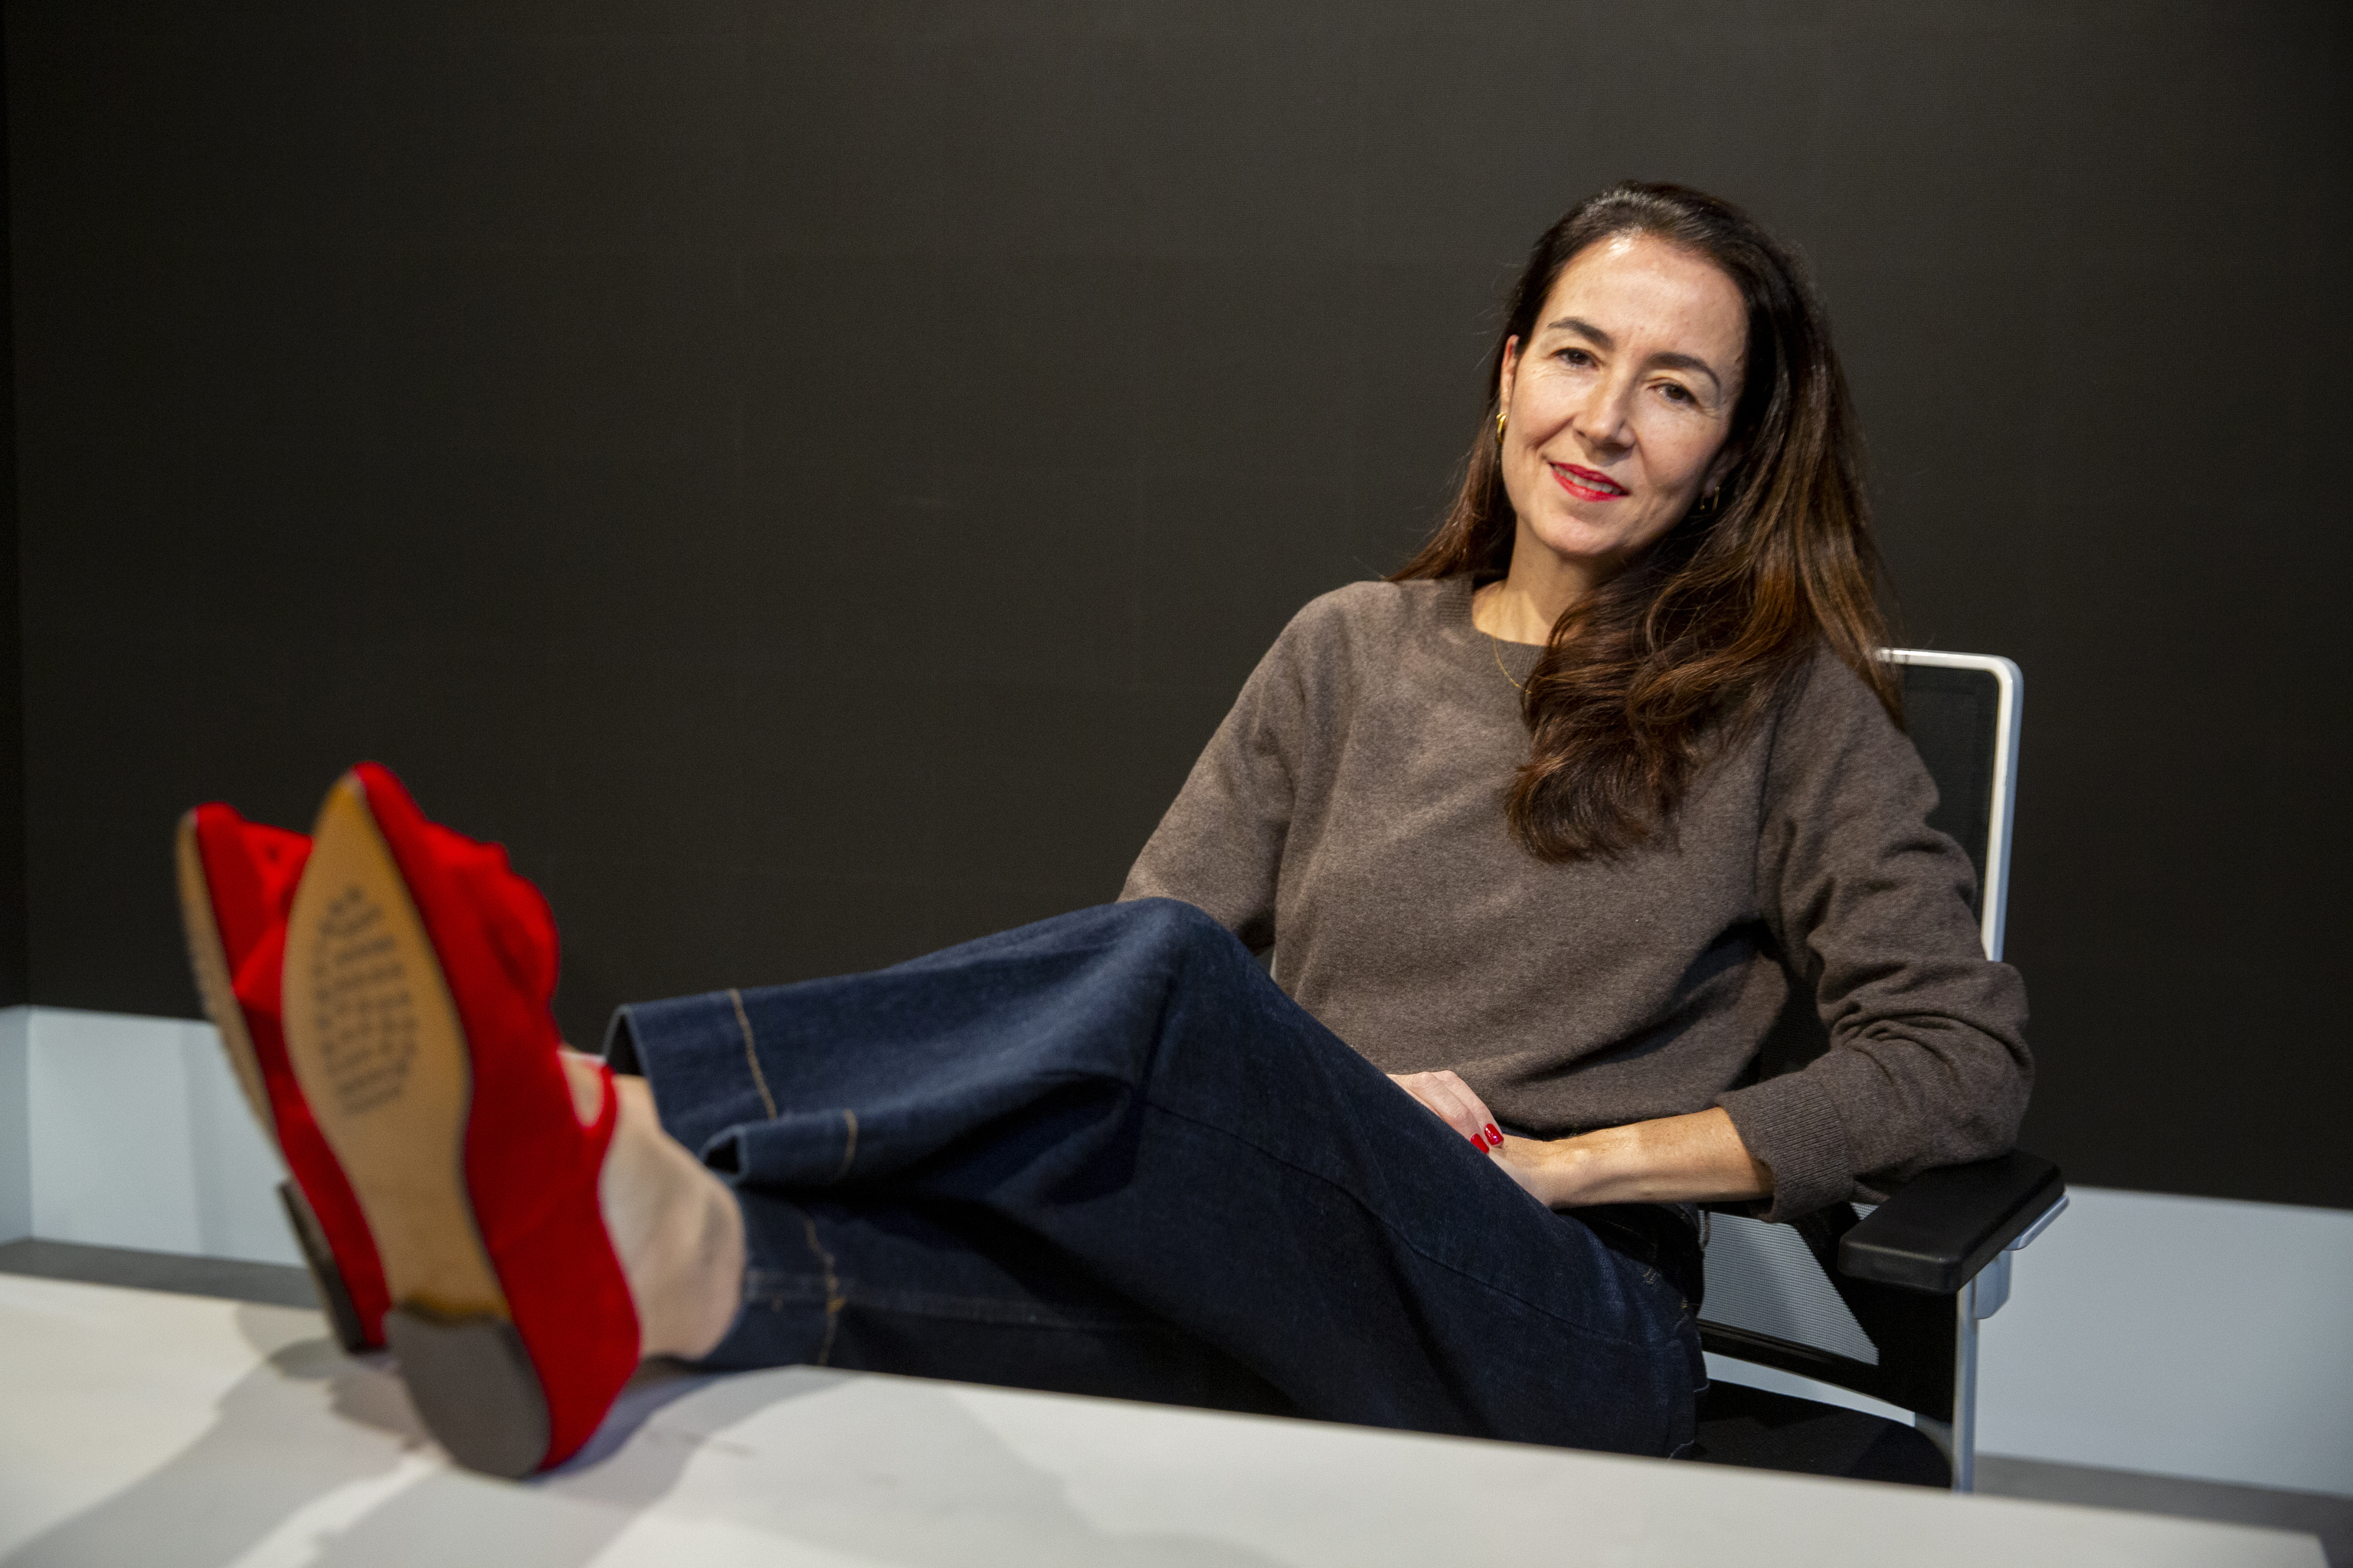 Isabel Moralejo, founder of the Adeba shoe brand.